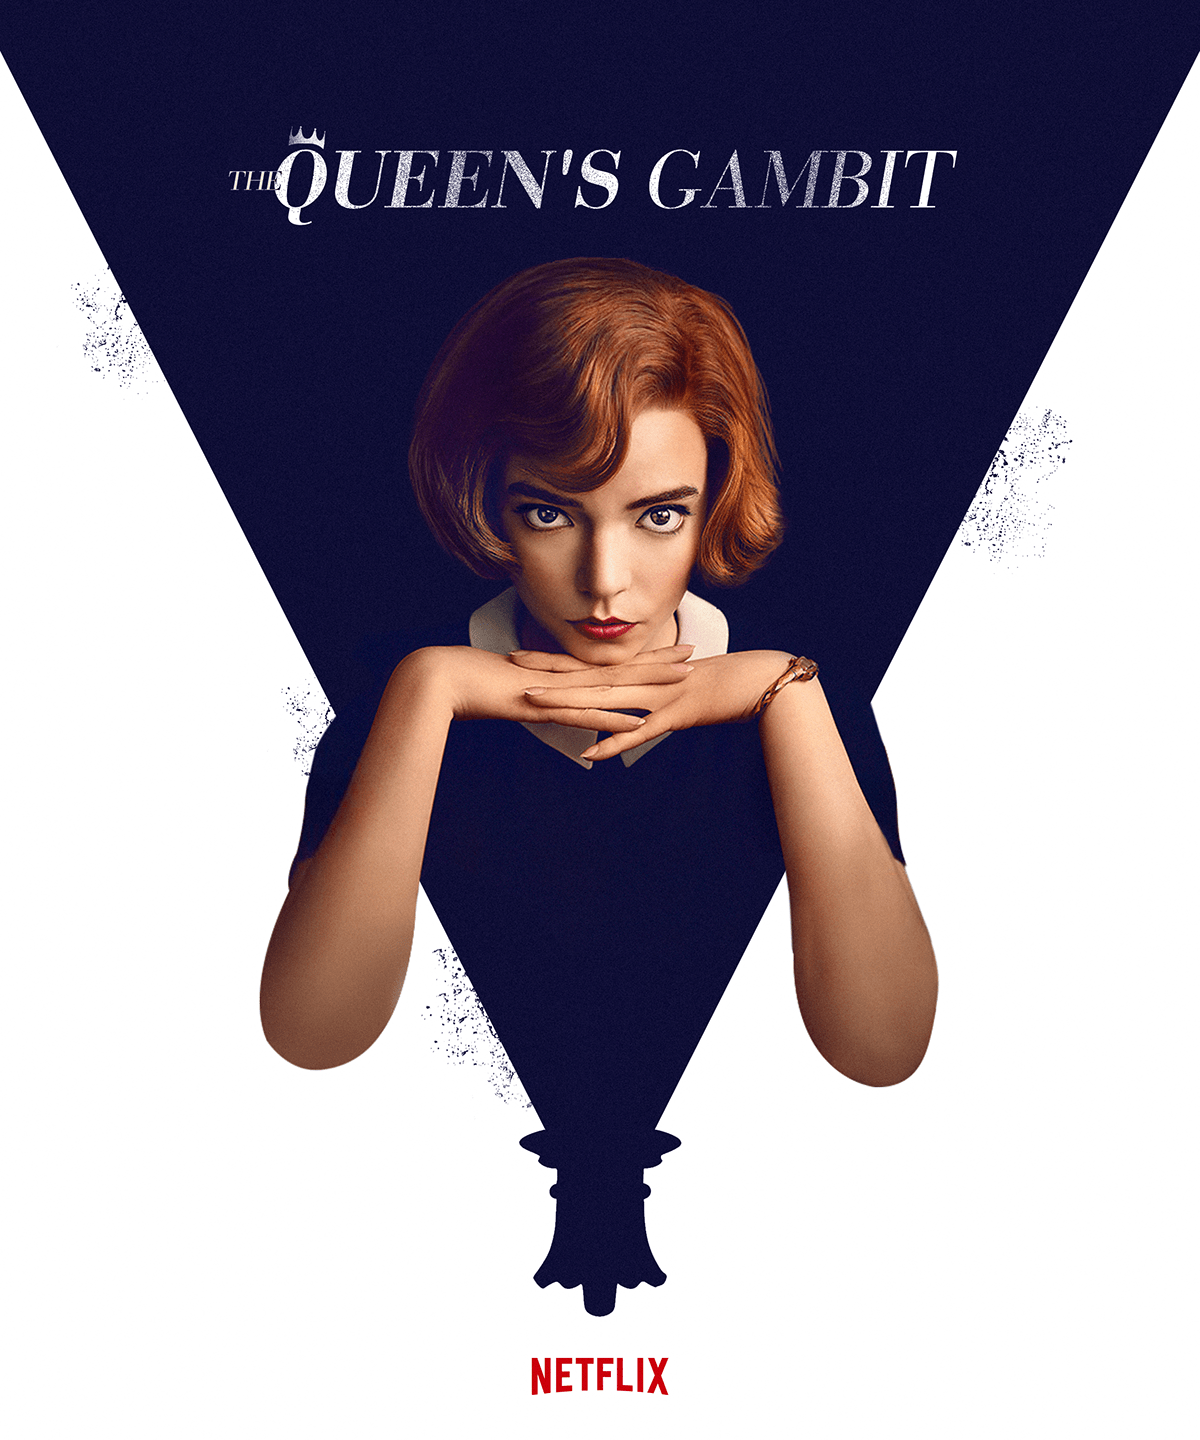 Queen's Gambit - Netflix on Behance